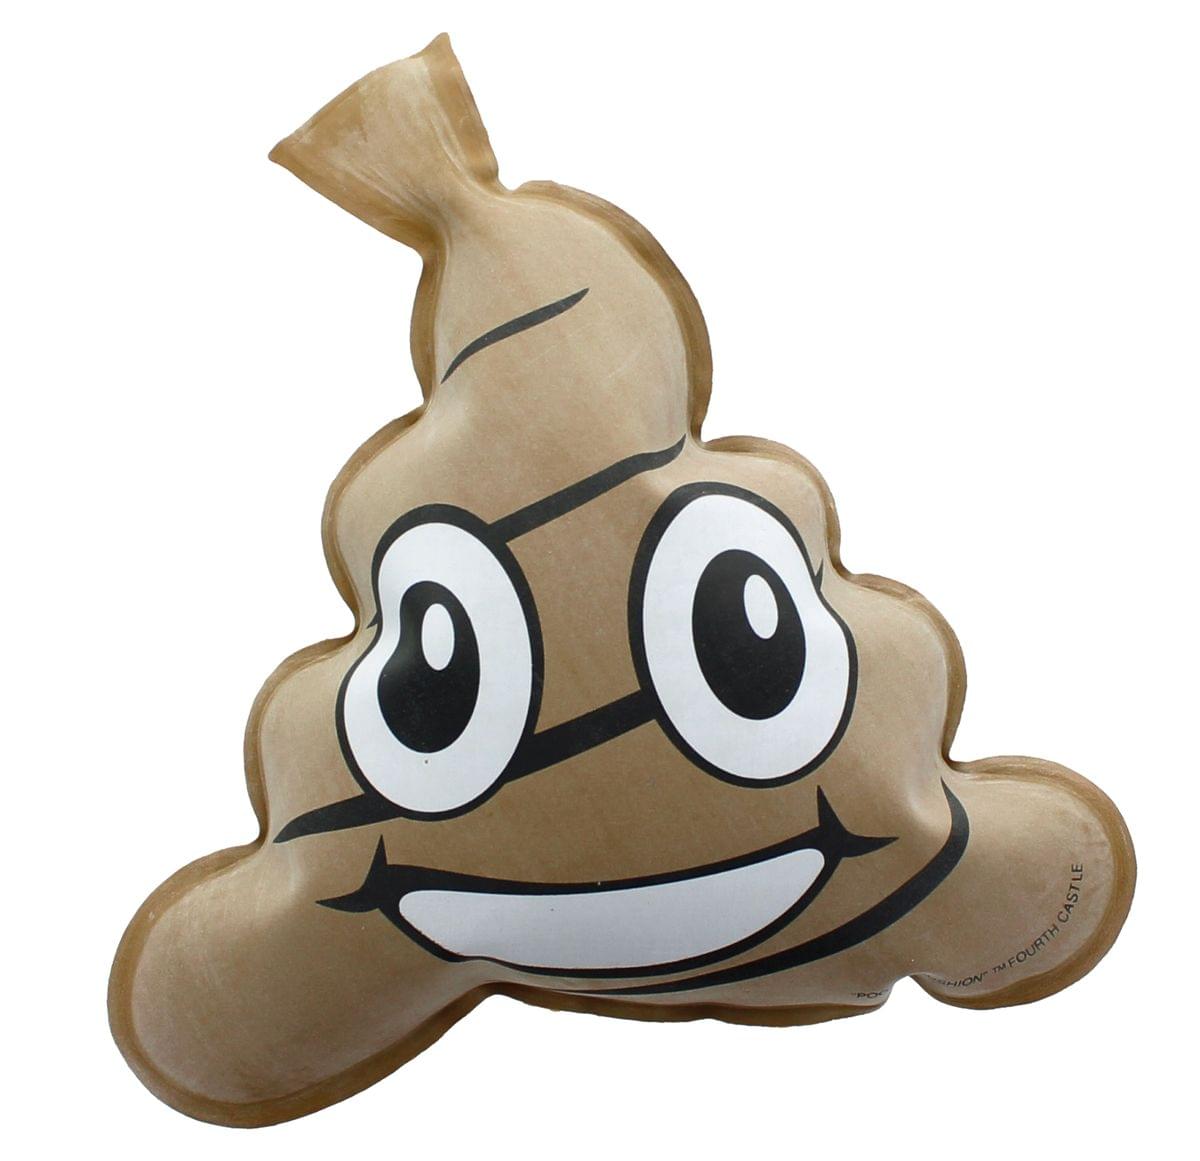 Poop Emoji Poopee Whoopee Fart Sound Cushion Toy Set of 3